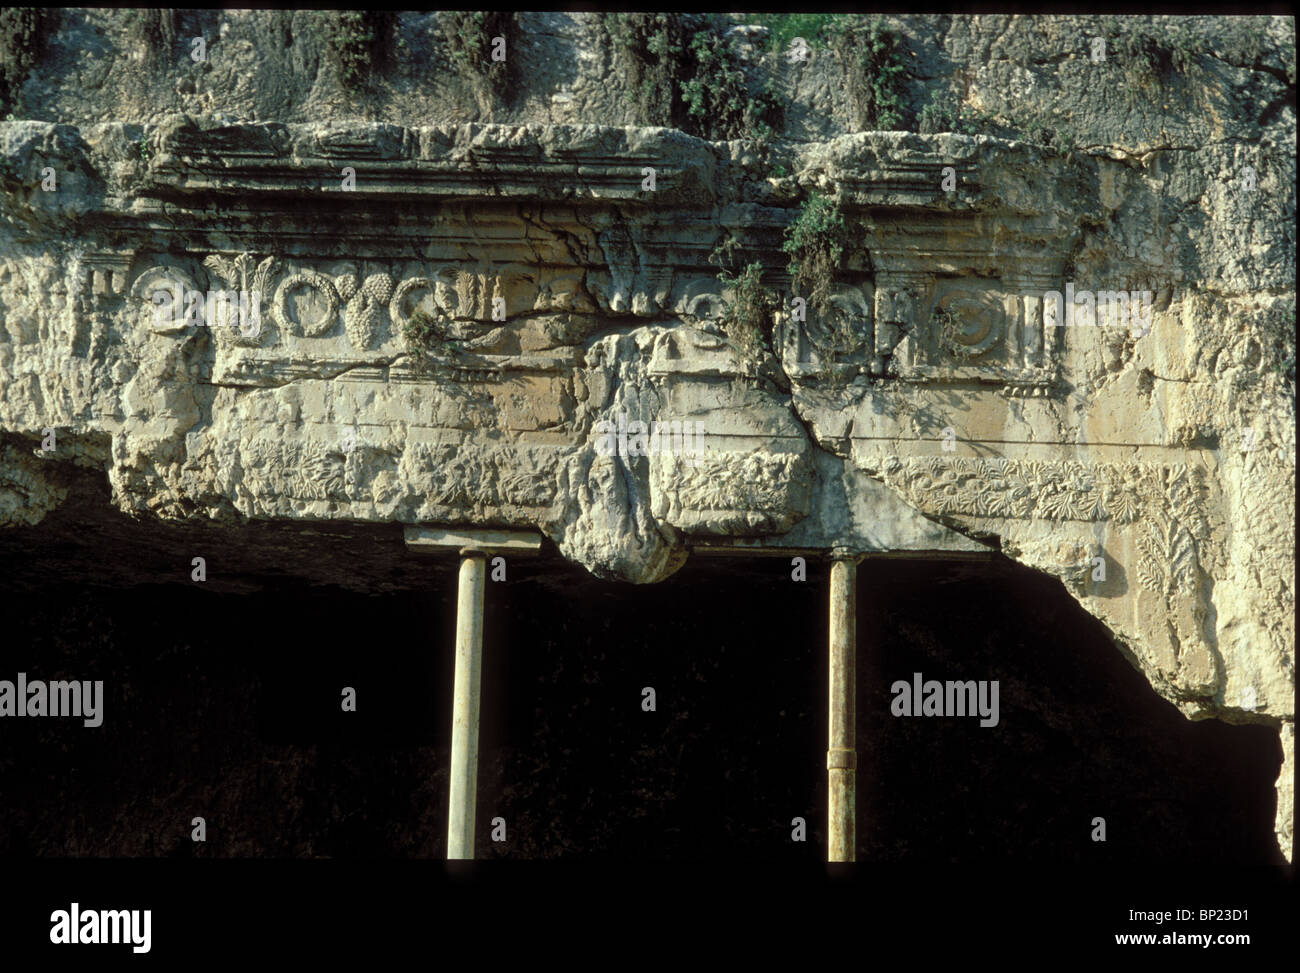 169. Las tumbas de los reyes, tumbas talladas de Roca en Jerusalén construido en el IST. C. AD. Por la reina Helena. Foto de stock